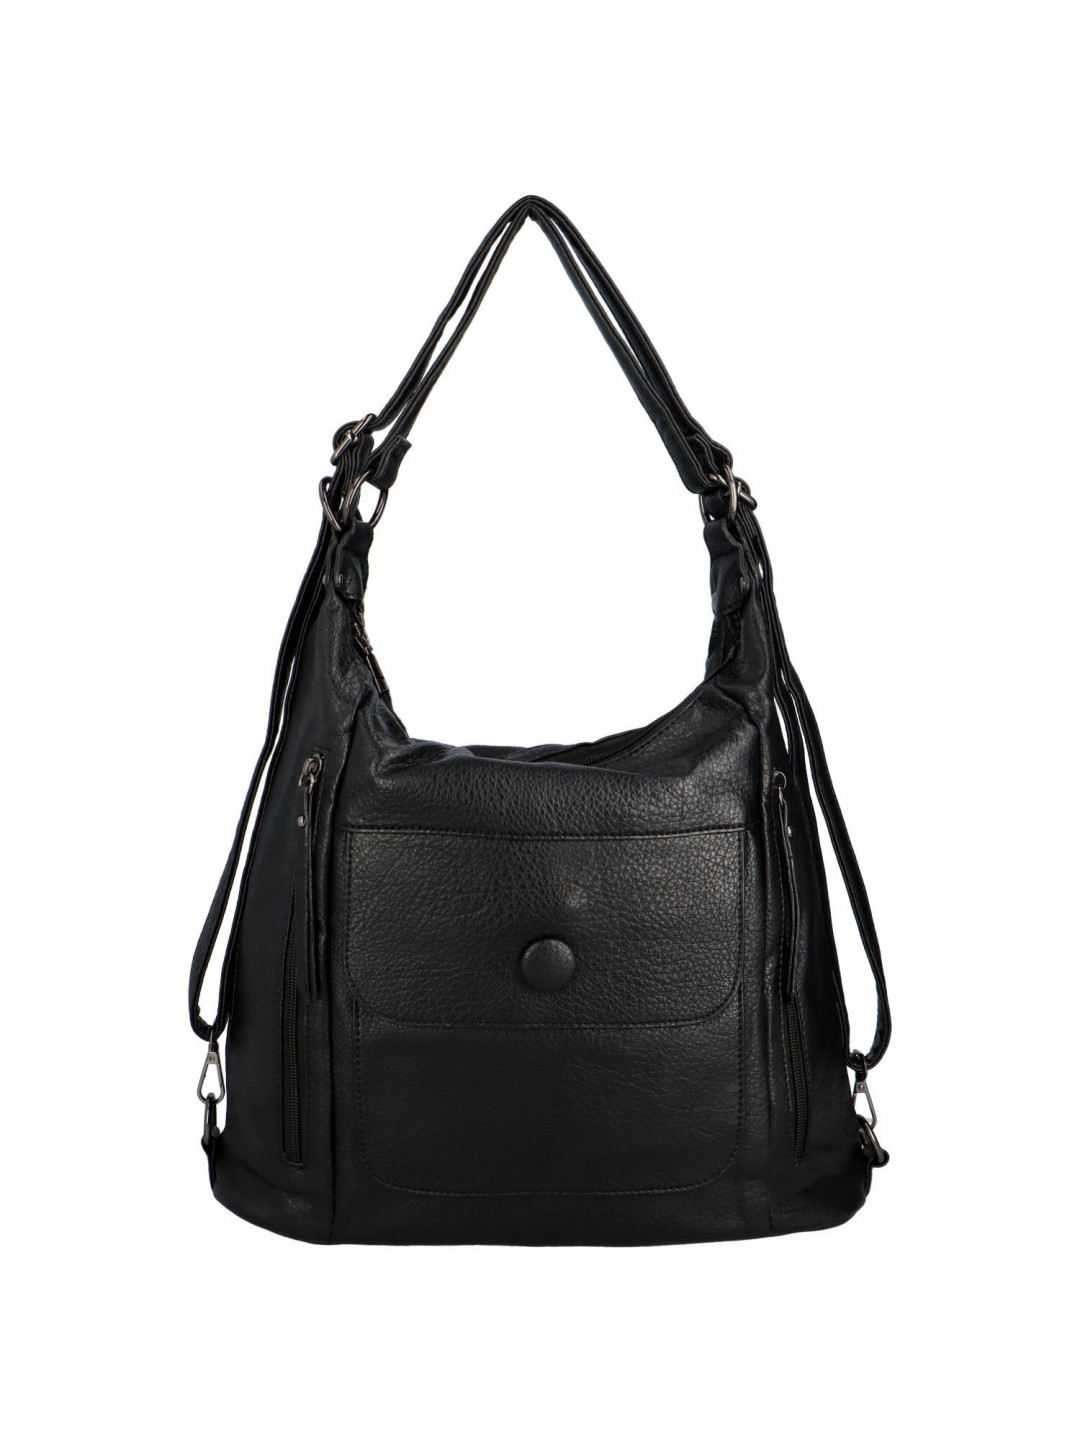 Trendová dámská kabelka batoh Retion černá